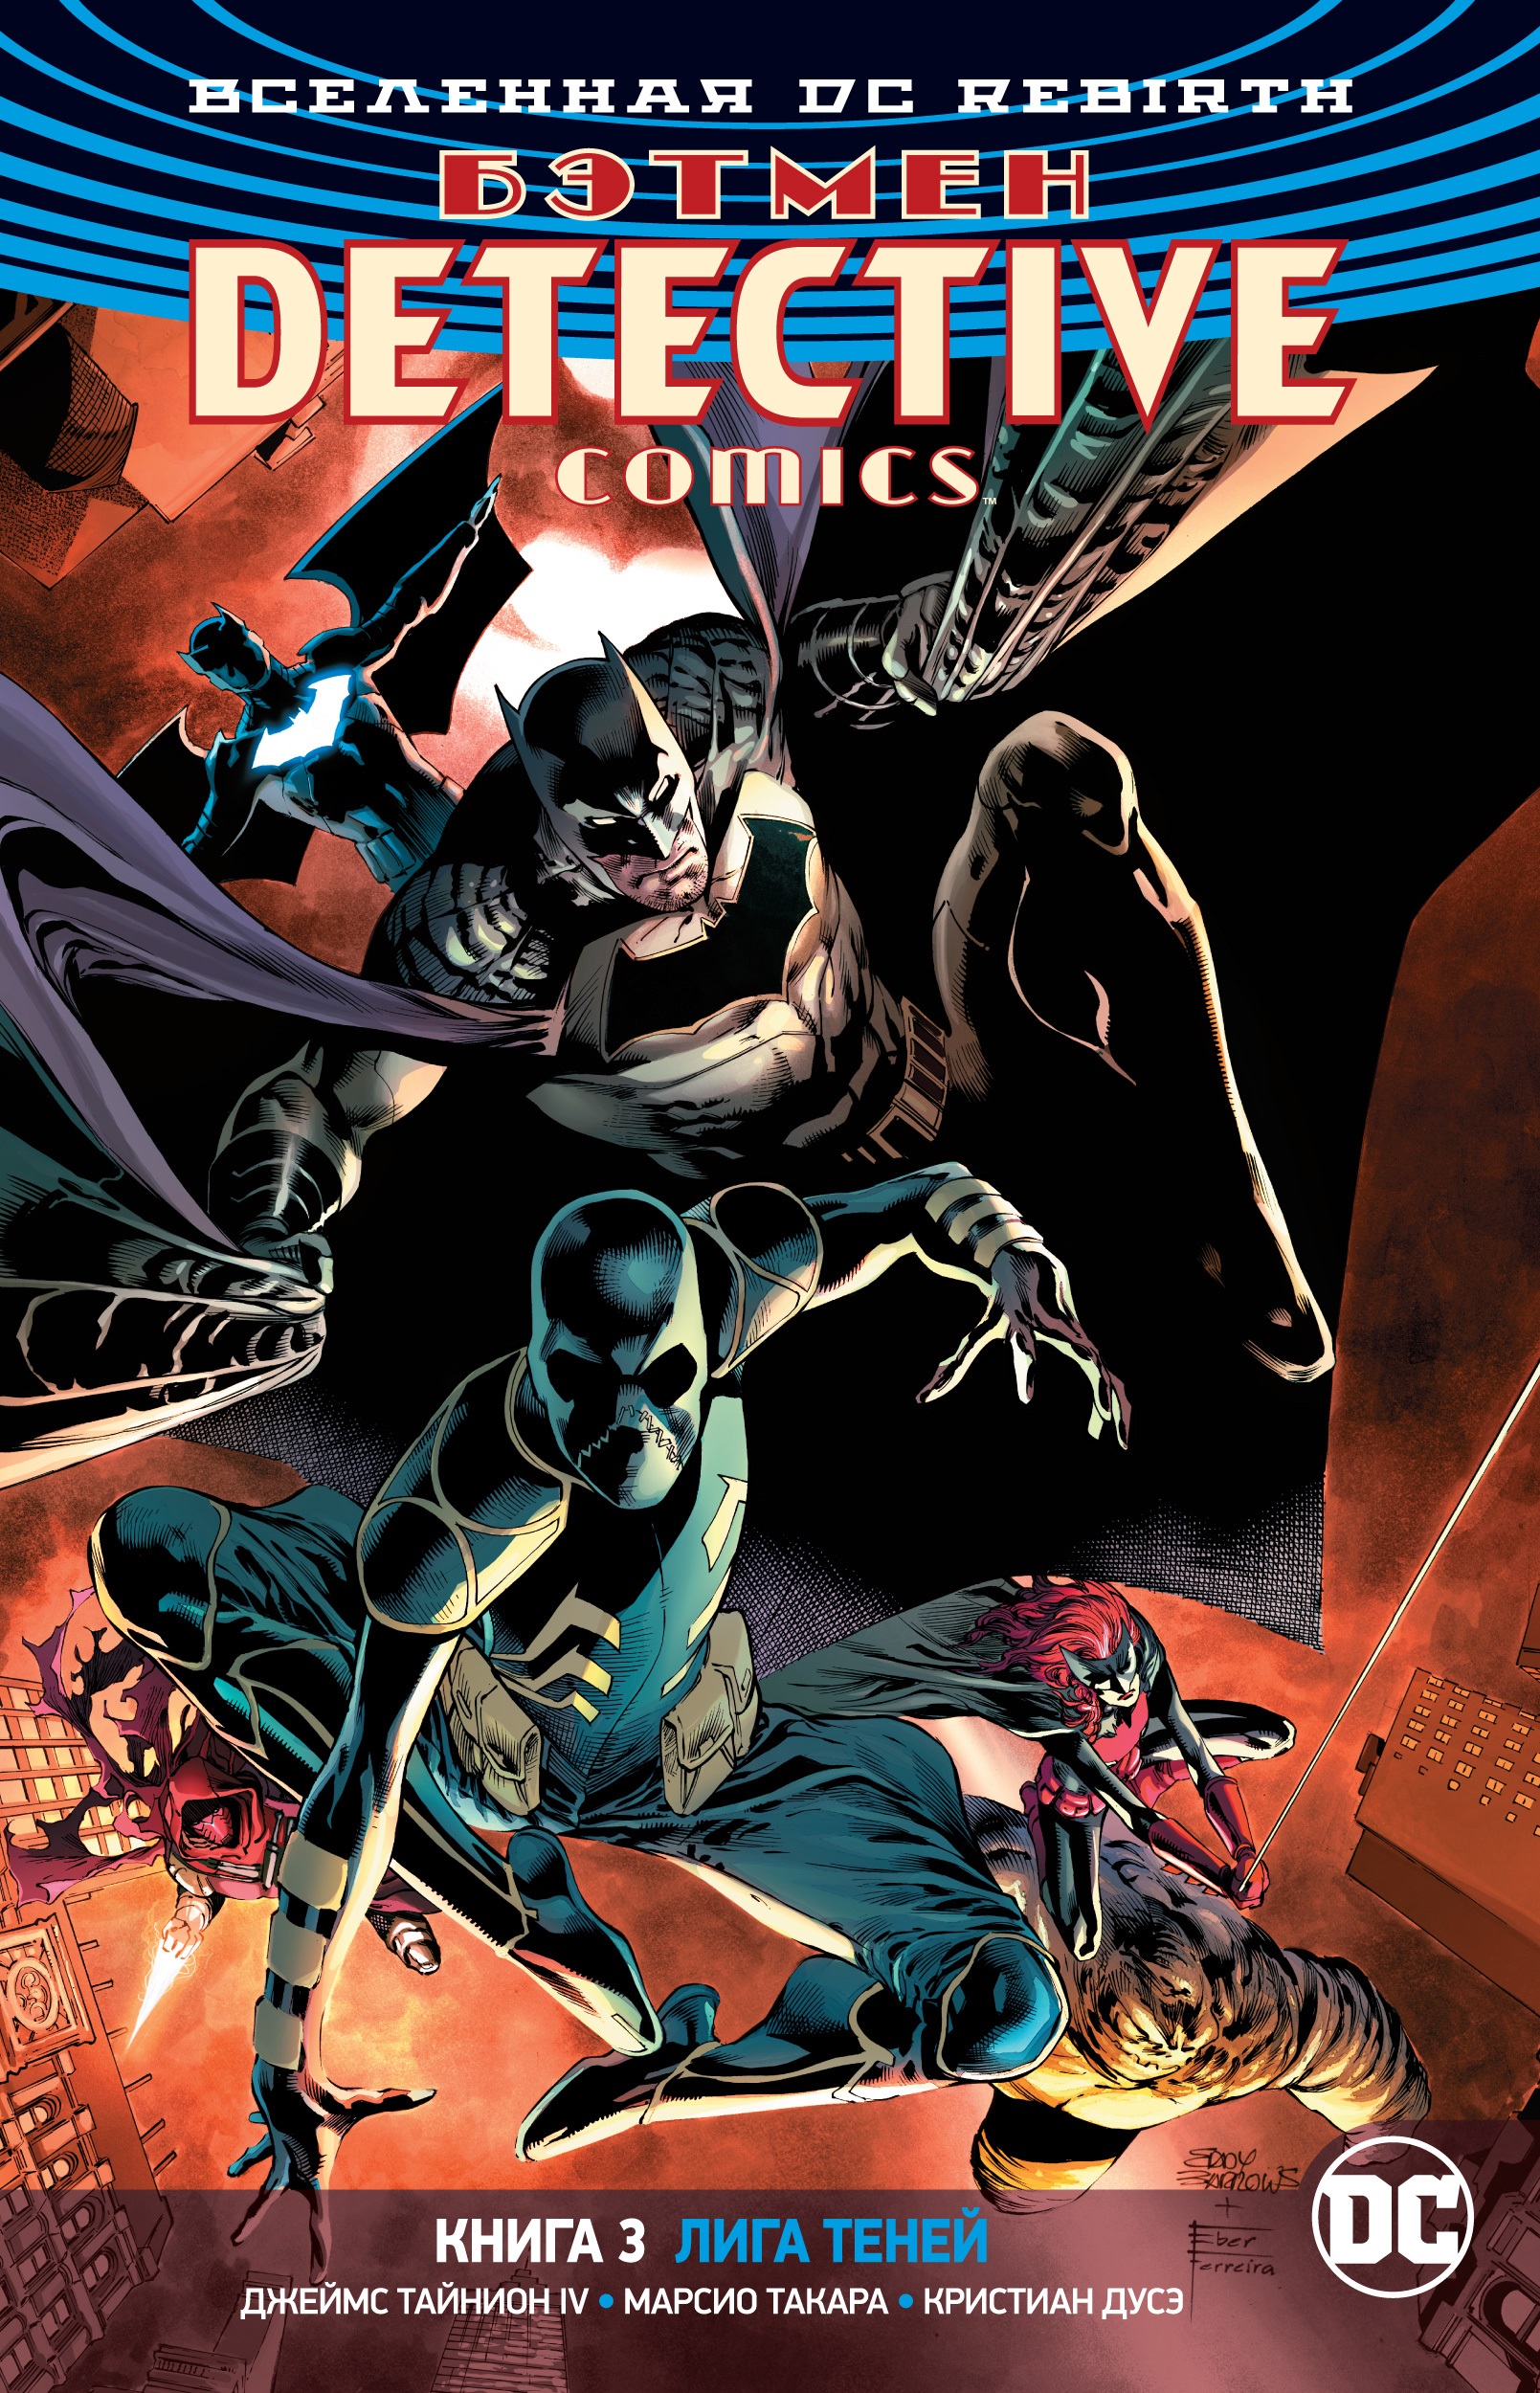 Тайнион IV Джеймс Вселенная DC. Rebirth. Бэтмен. Detective Comics. Книга 3. Лига Теней